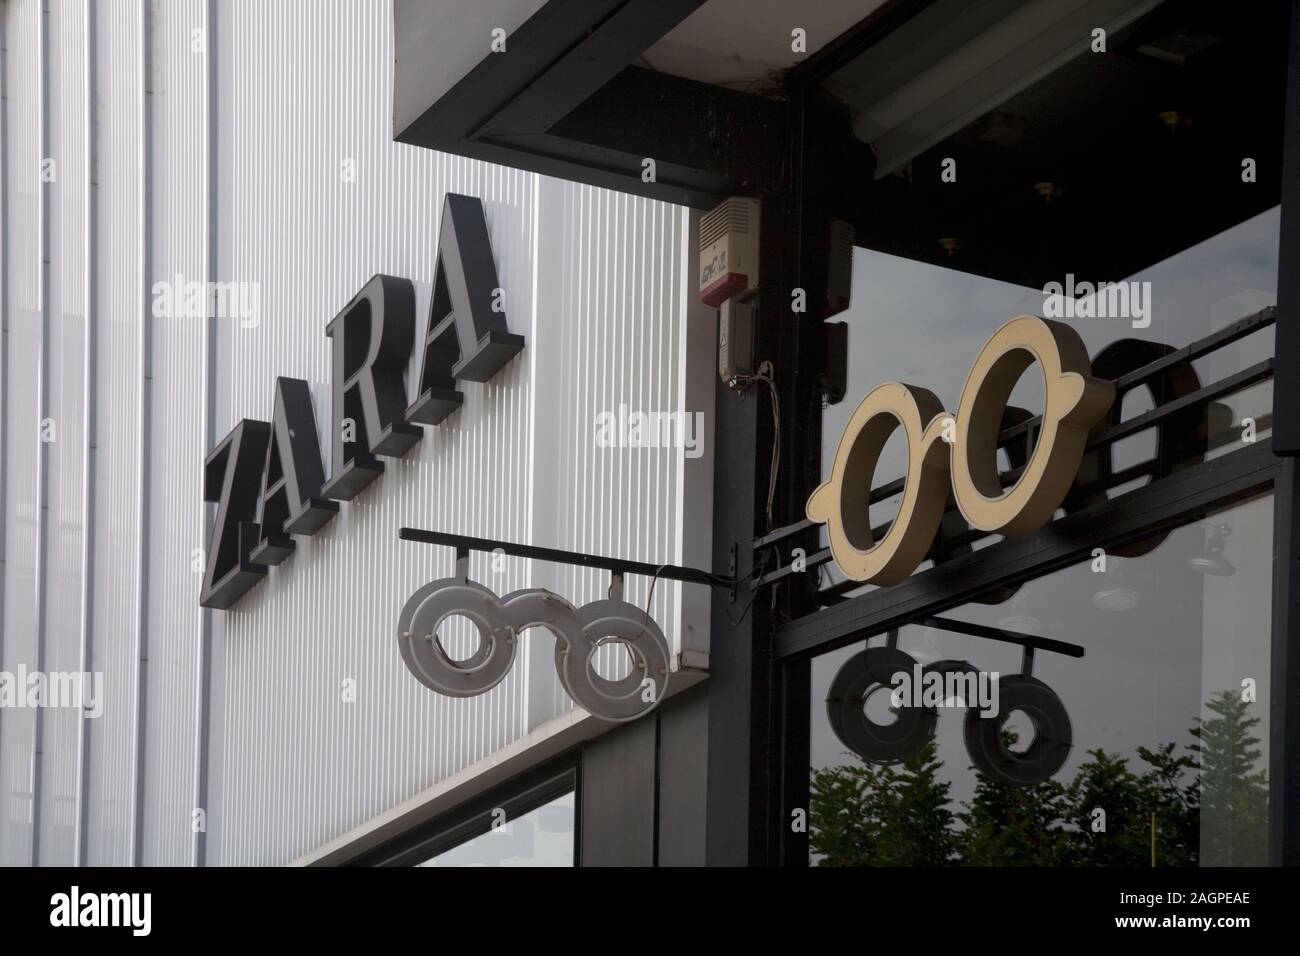 Zara athens greece Banque de photographies et d'images à haute résolution -  Alamy